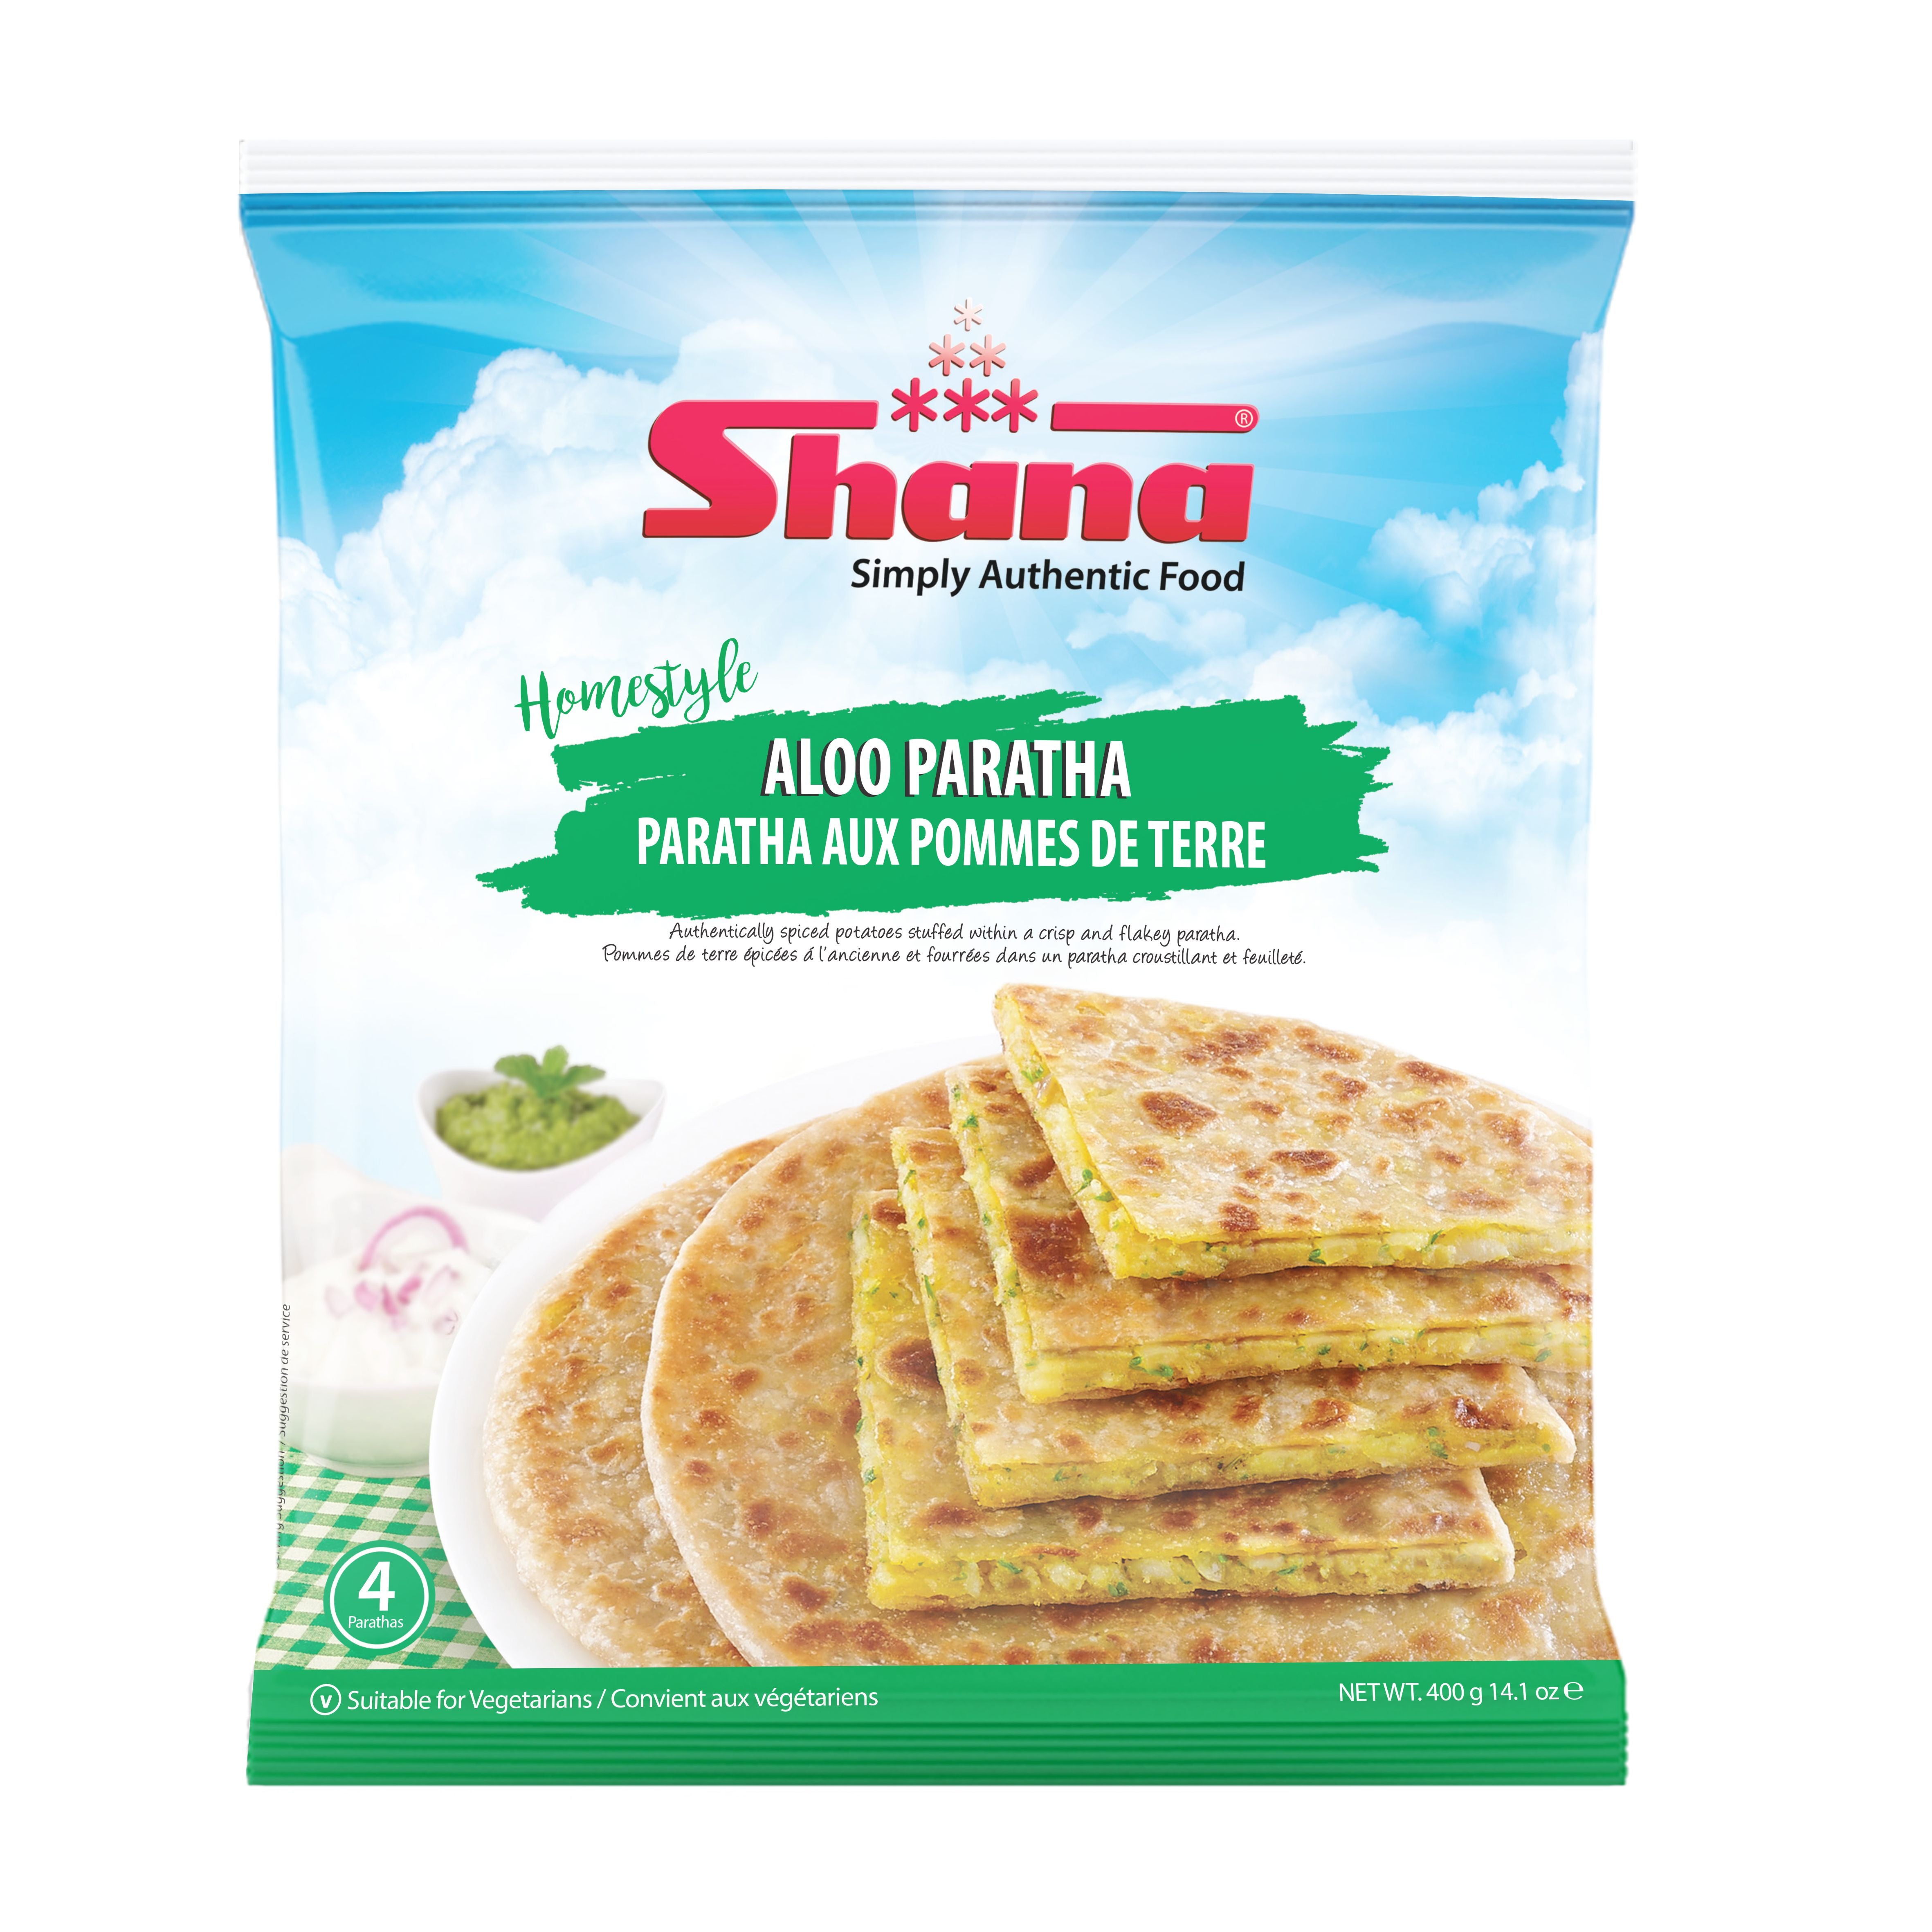 Shana - Mini Samosa Variety Pack - 30ct